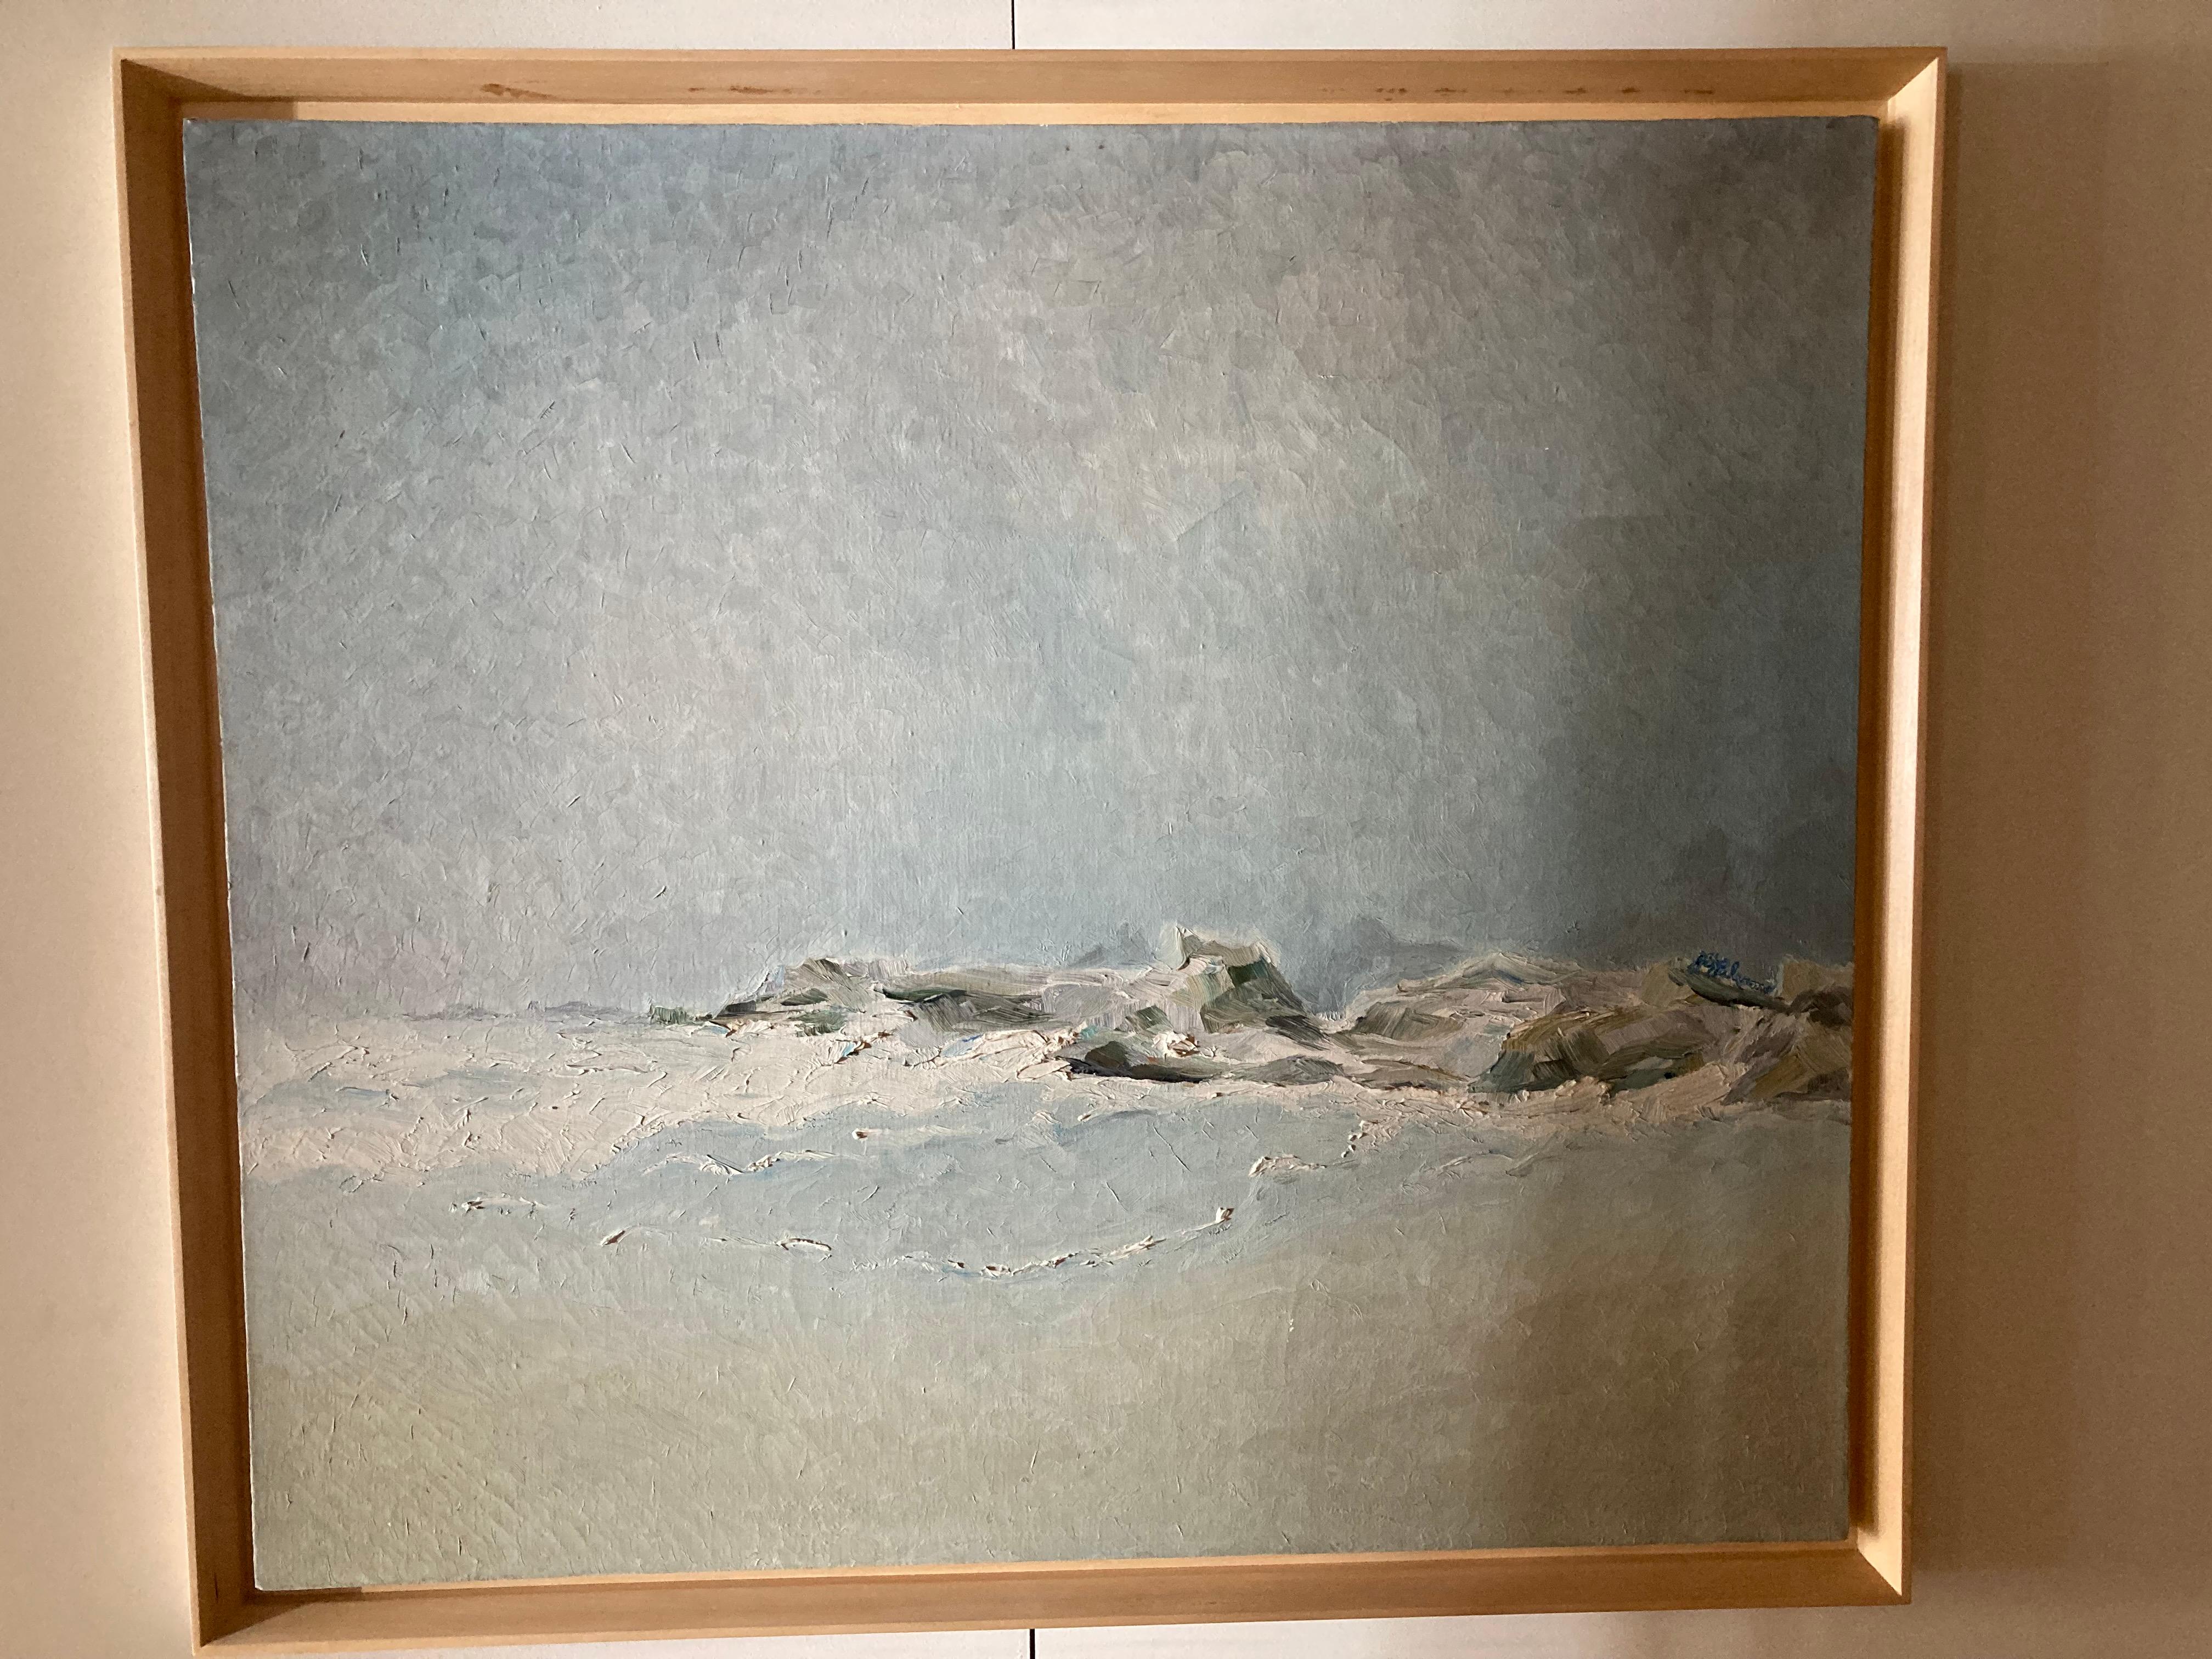 Merveilleuse peinture abstraite de paysage marin, circa CIRCA
Acrylique sur toile avec cadre en bouleau.
Les coups de pinceau subtils qui créent la texture de la toile imitent le fracas des vagues sur l'affleurement rocheux. 
Signature de l'artiste